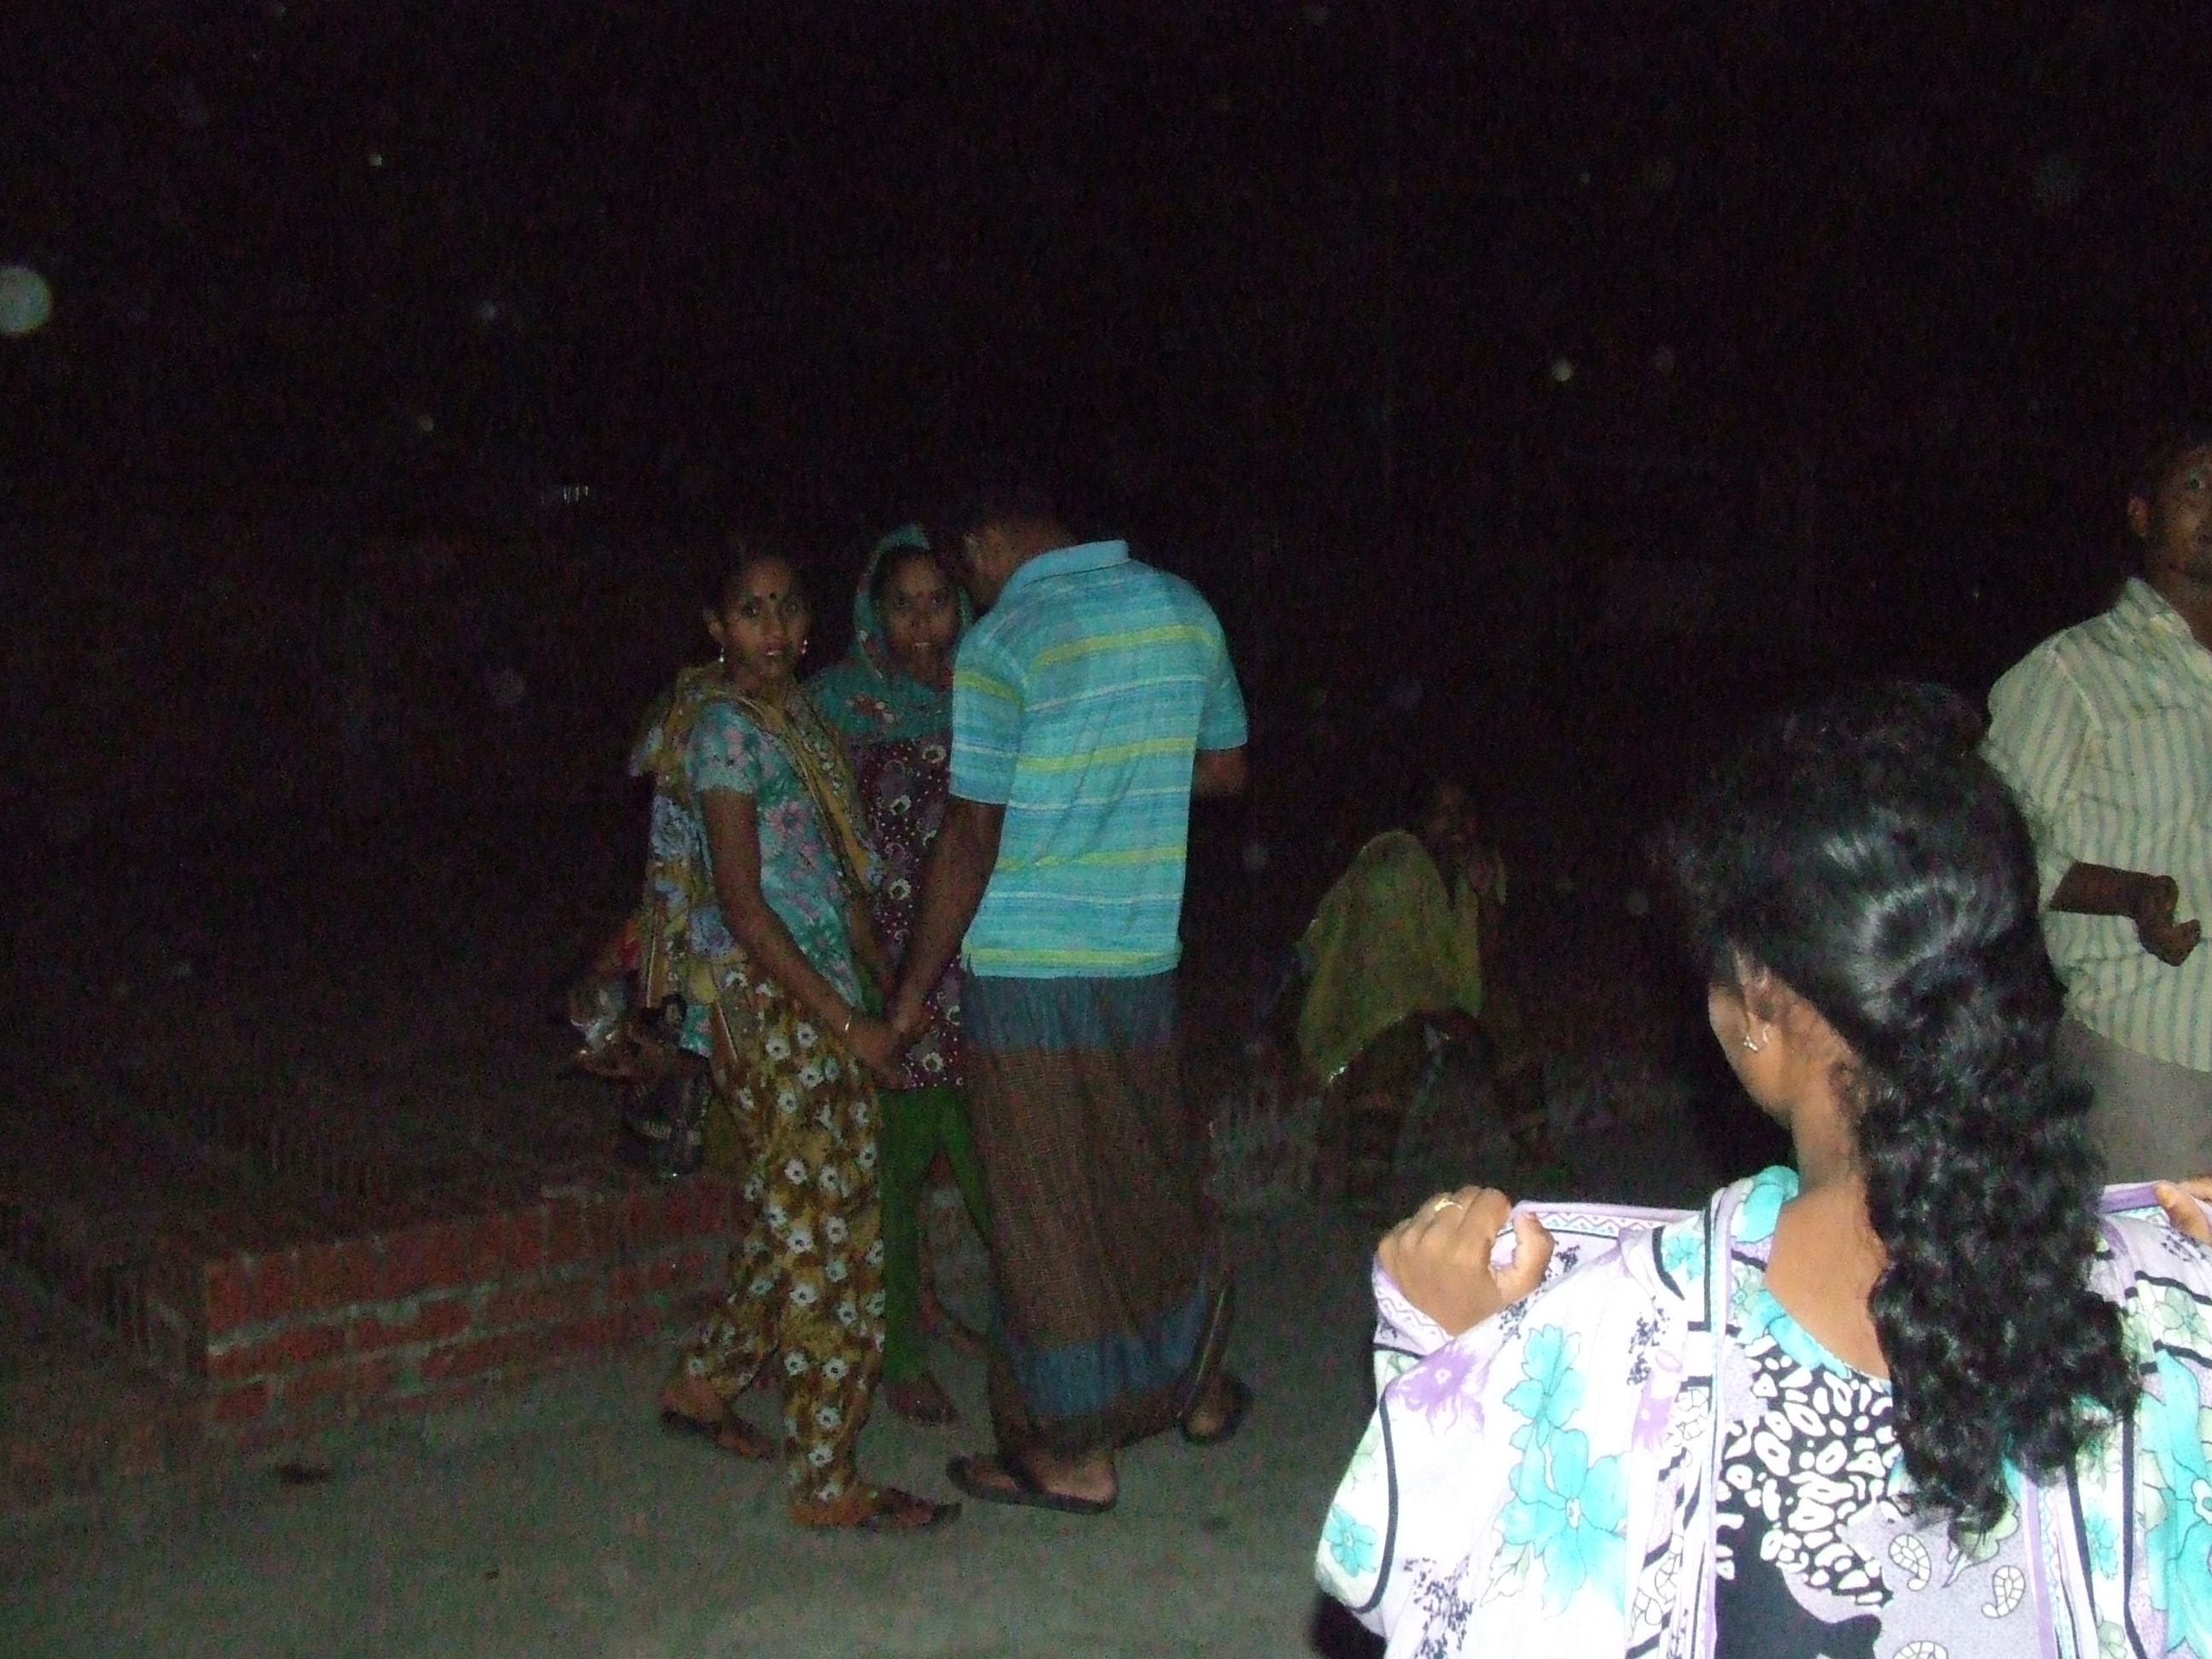 Escort girls in Rajshahi